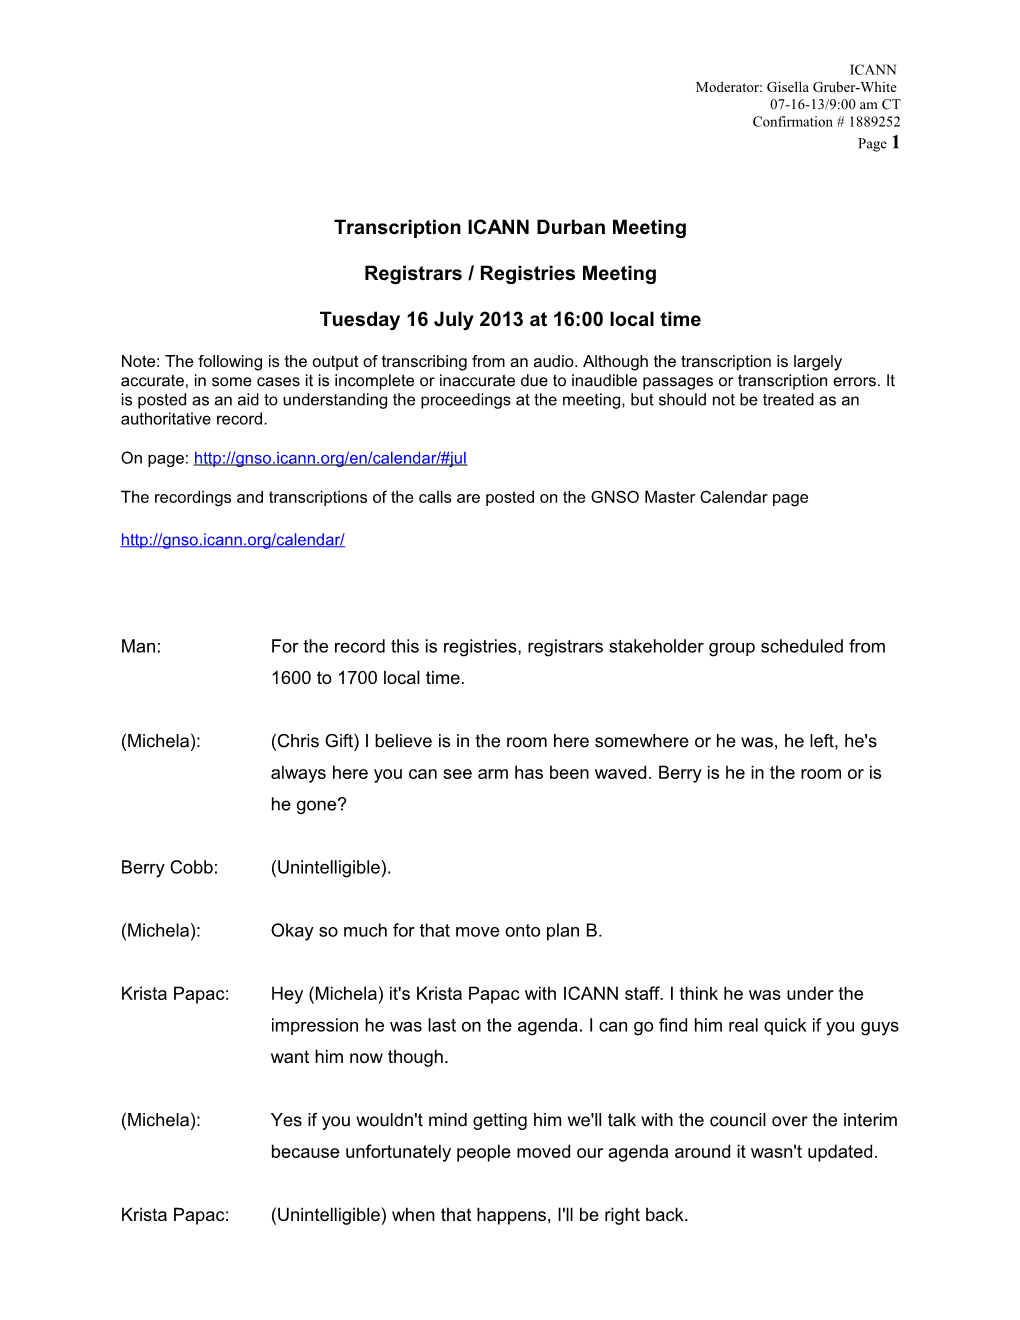 Transcription ICANN Durban Meeting